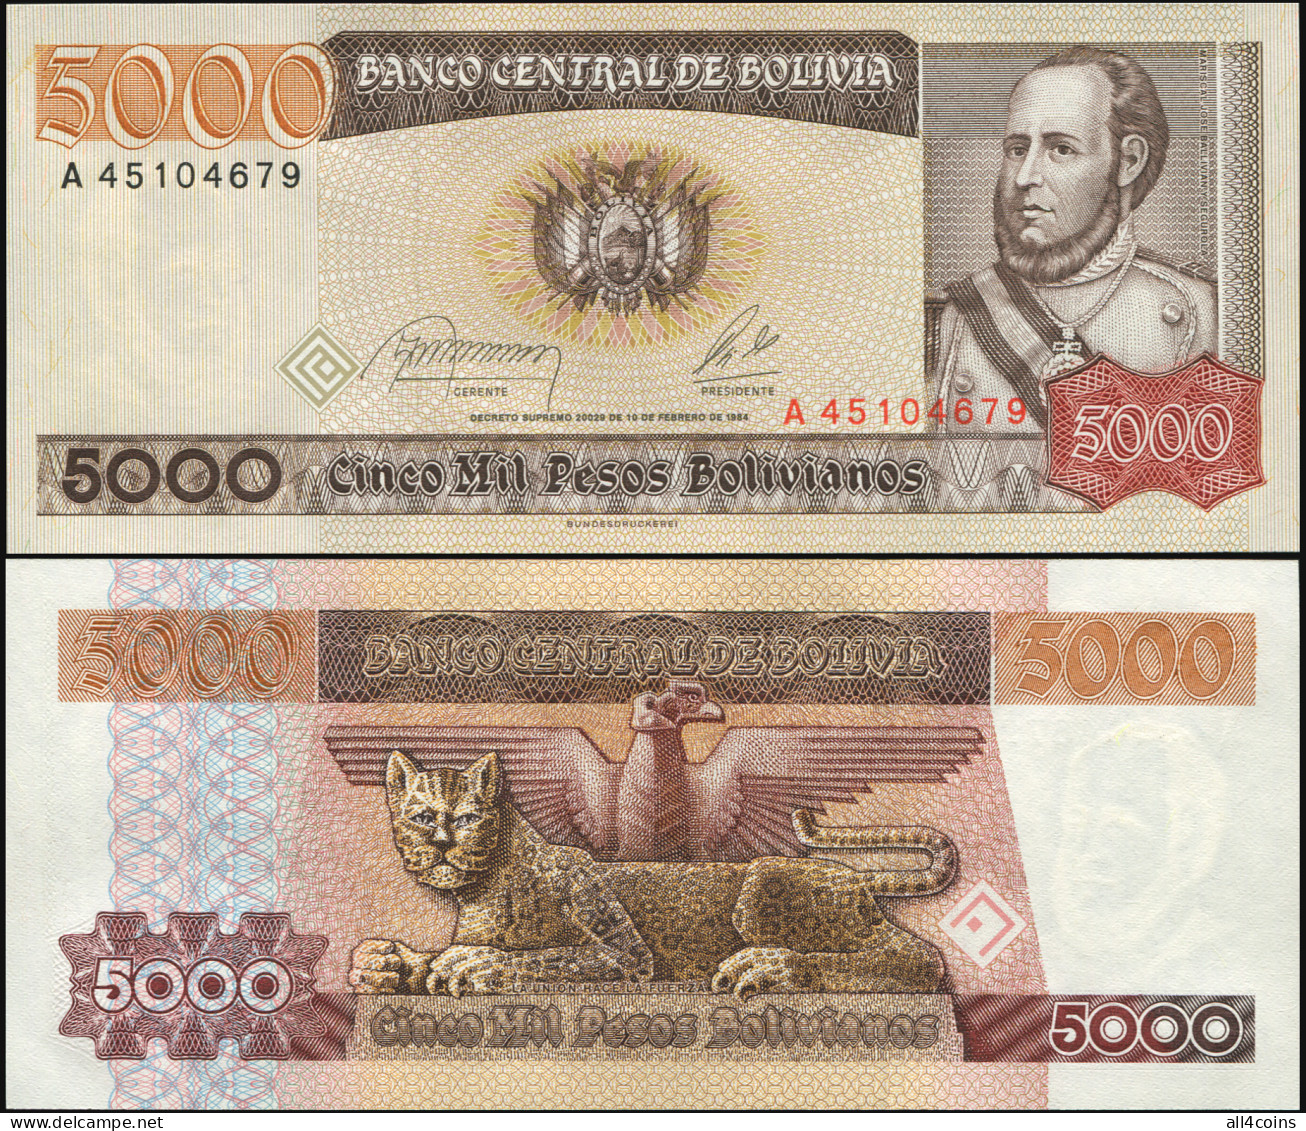 Bolivia 5000 Pesos Bolivianos. L.10.02.1984 Unc. Banknote Cat# P.168a - Bolivien